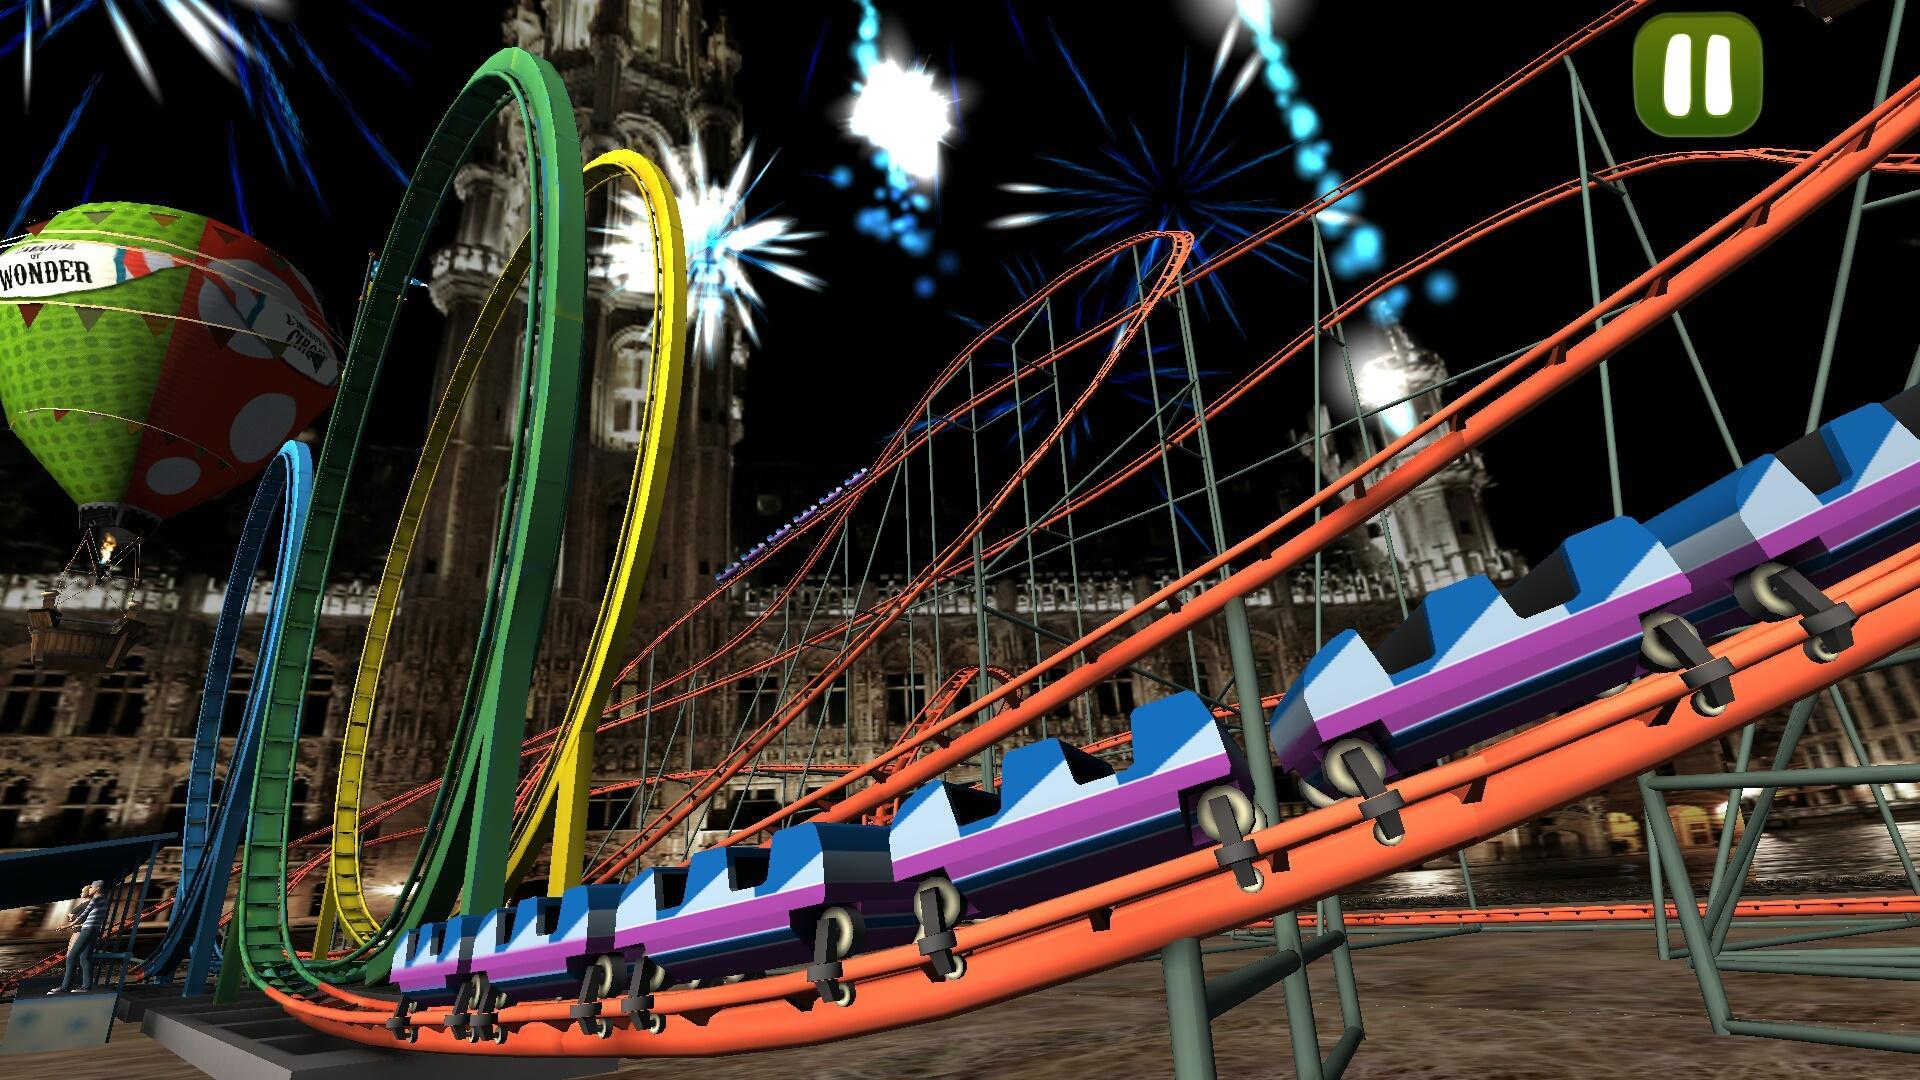 Vr аттракционы видео. Роллер Коастер игра. ВР игры про американские горки. Американские горки 5д Амазон. VR Roller Coaster Storm extreme.